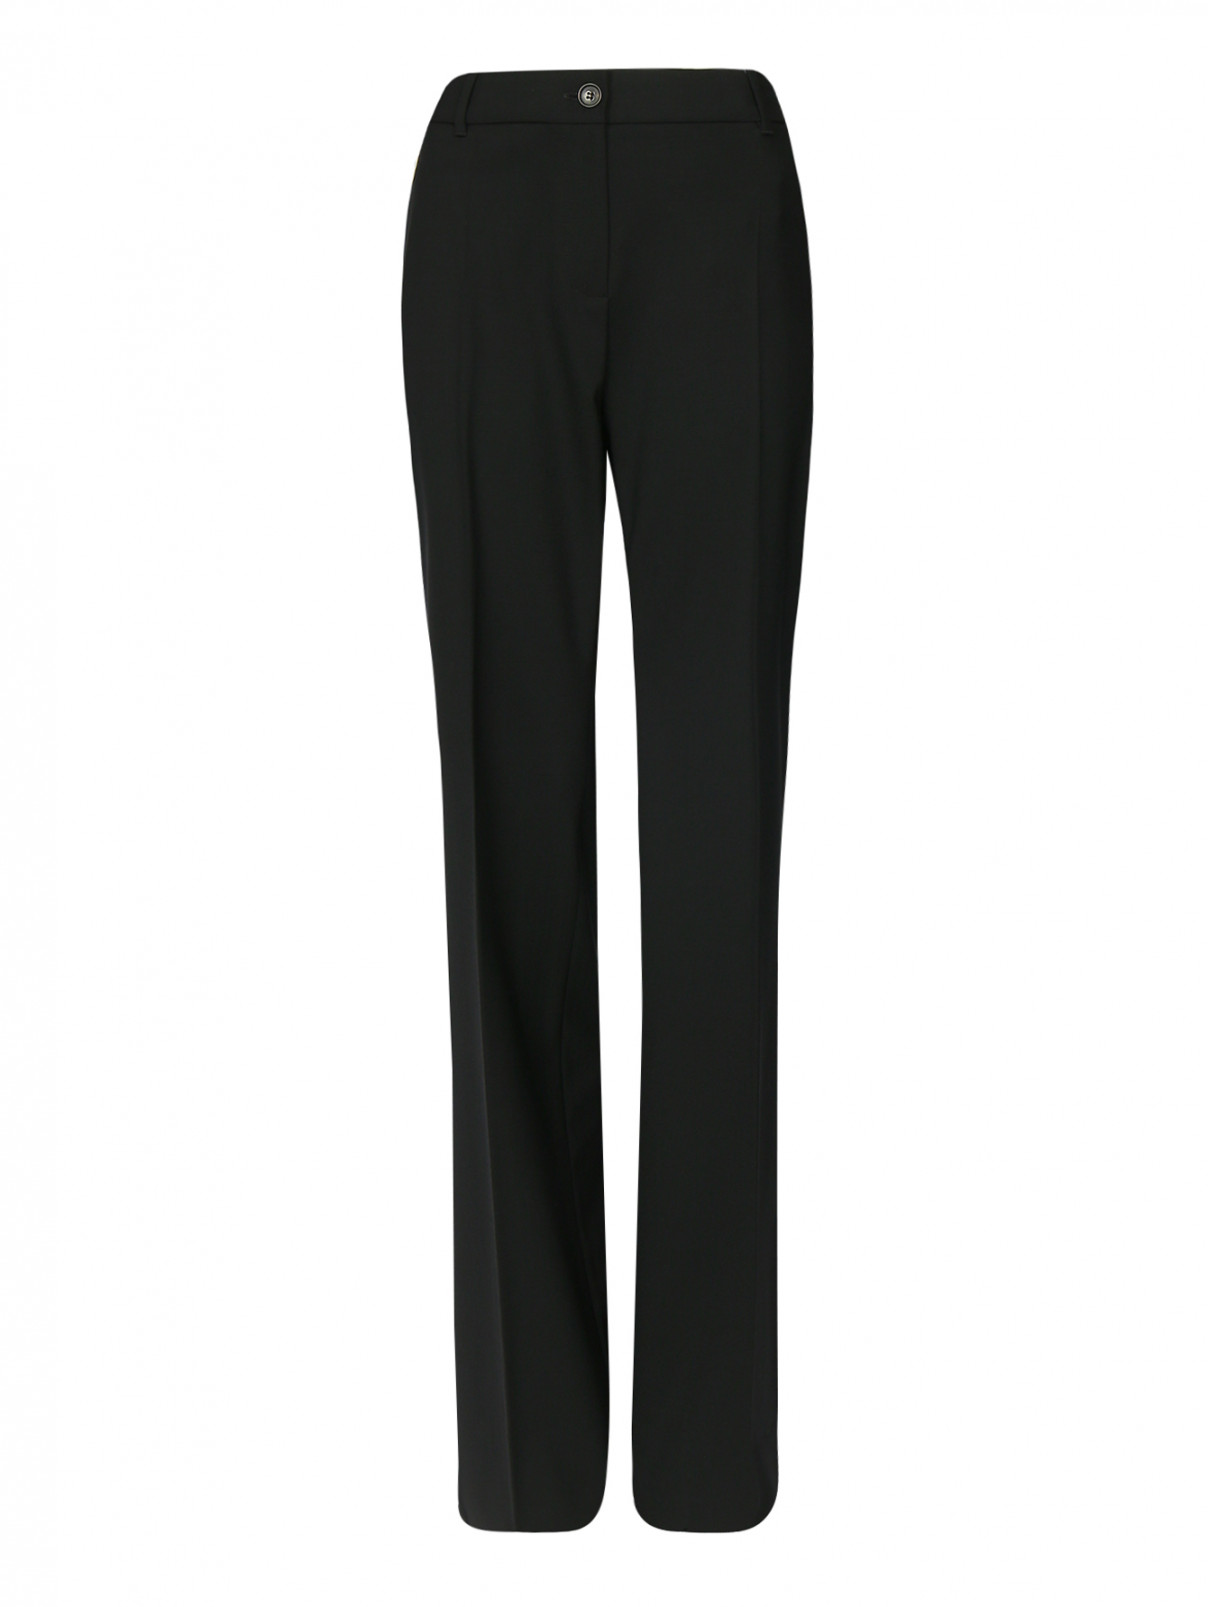 Прямые классические брюки из шерсти Max Mara  –  Общий вид  – Цвет:  Черный